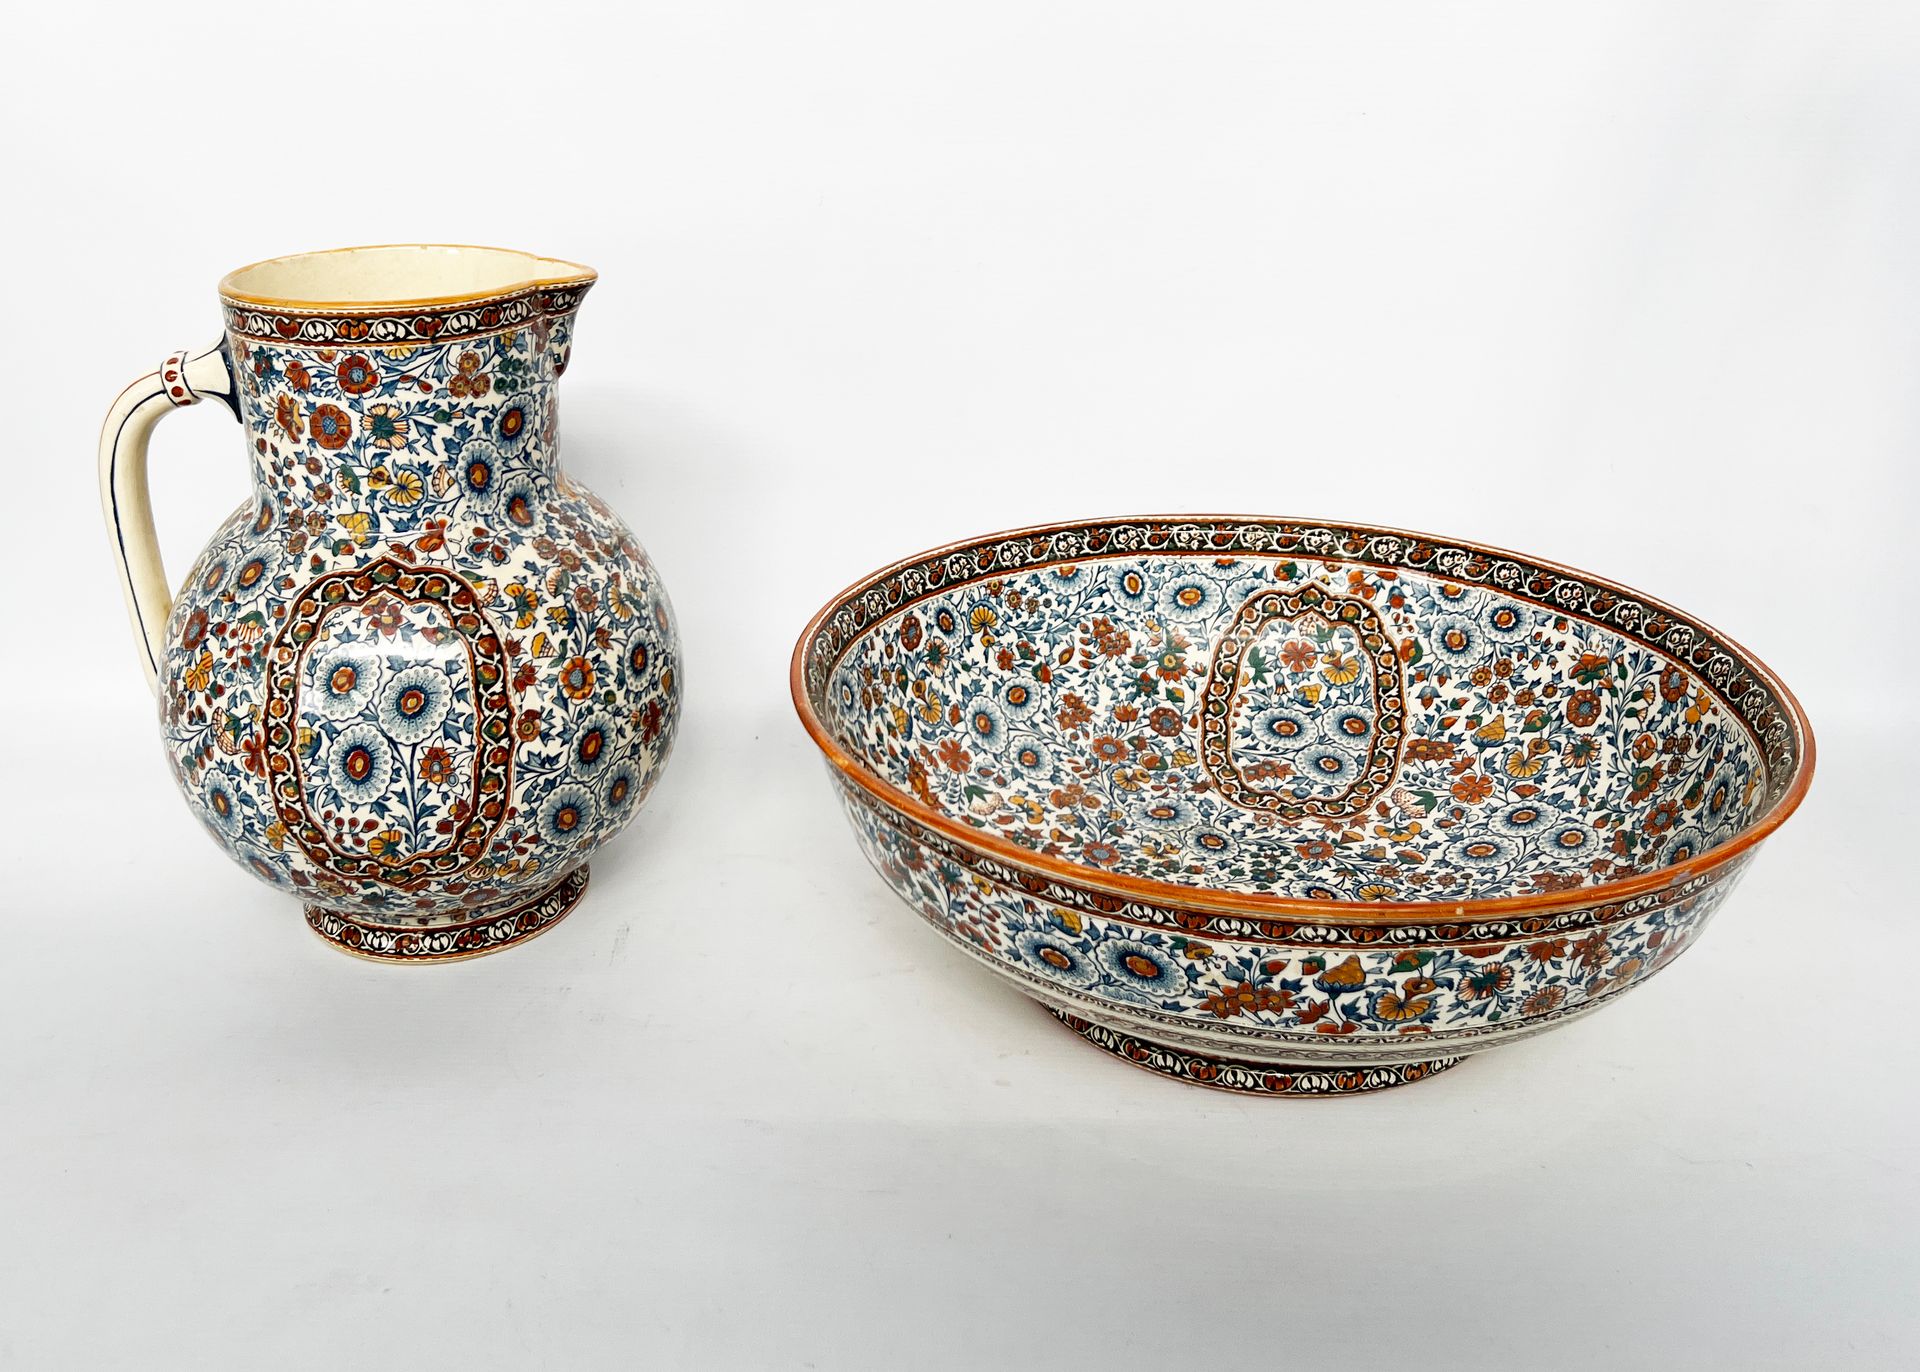 Null 吉恩，19世纪末

拍品包括一个大的釉面陶器沙拉碗和一个带有印度装饰的水壶。

沙拉碗高度：14厘米

D. 沙拉碗：39厘米 

高：30厘米